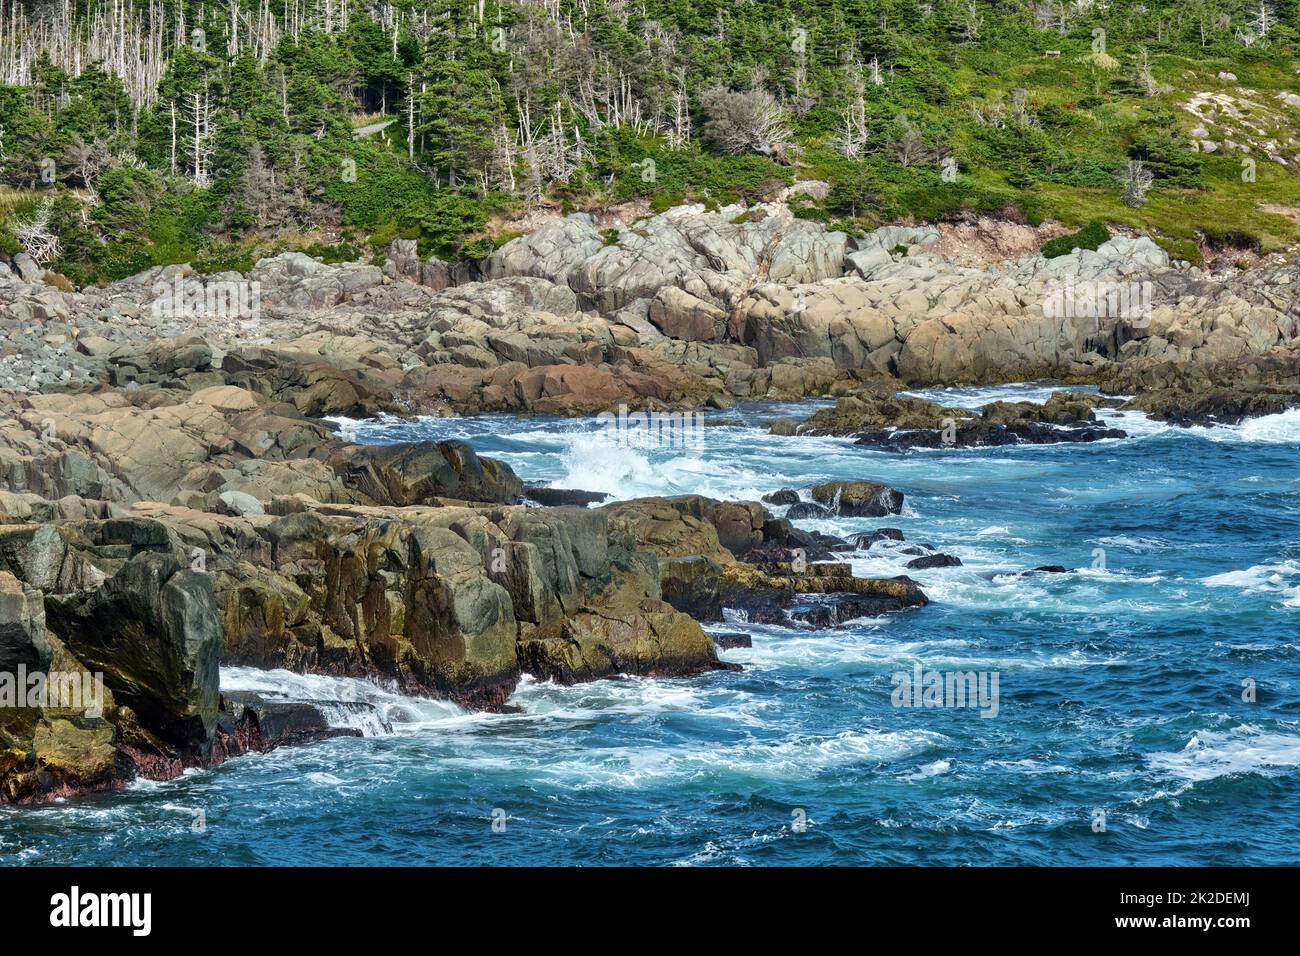 Onde forti batter la costa frastagliata di Capo Breton vicino a Louisbourg Nova Scotia. Foto Stock